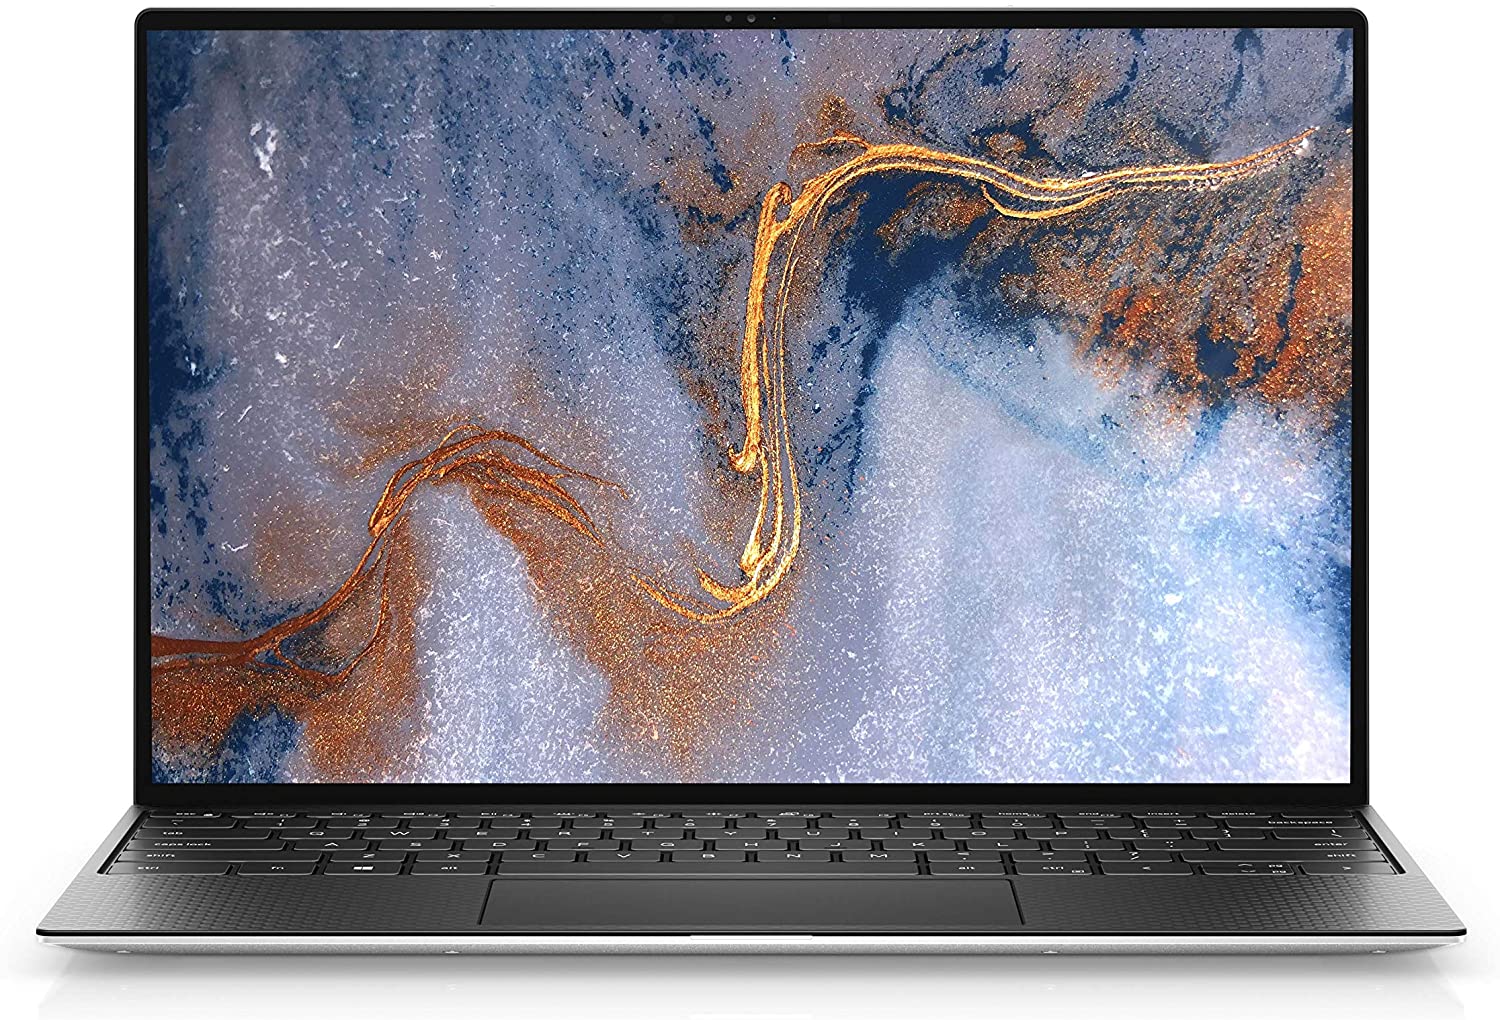 Dell Xps 9300 - Laptop Cho Doanh Nhân Sang Trọng, Mỏng Nhẹ, Giá Tốt Nhất TT